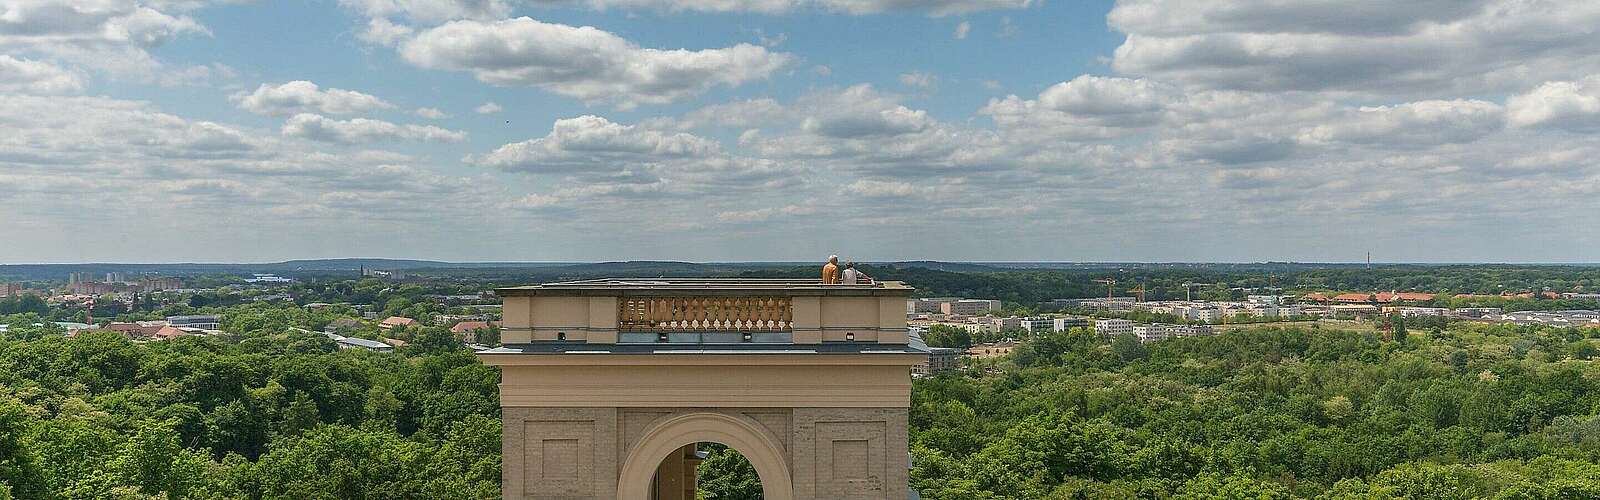 Blick vom Schloss Belvedere über Potsdam,
        
    

        Foto: Fotograf / Lizenz - Media Import/Steffen Lehmann